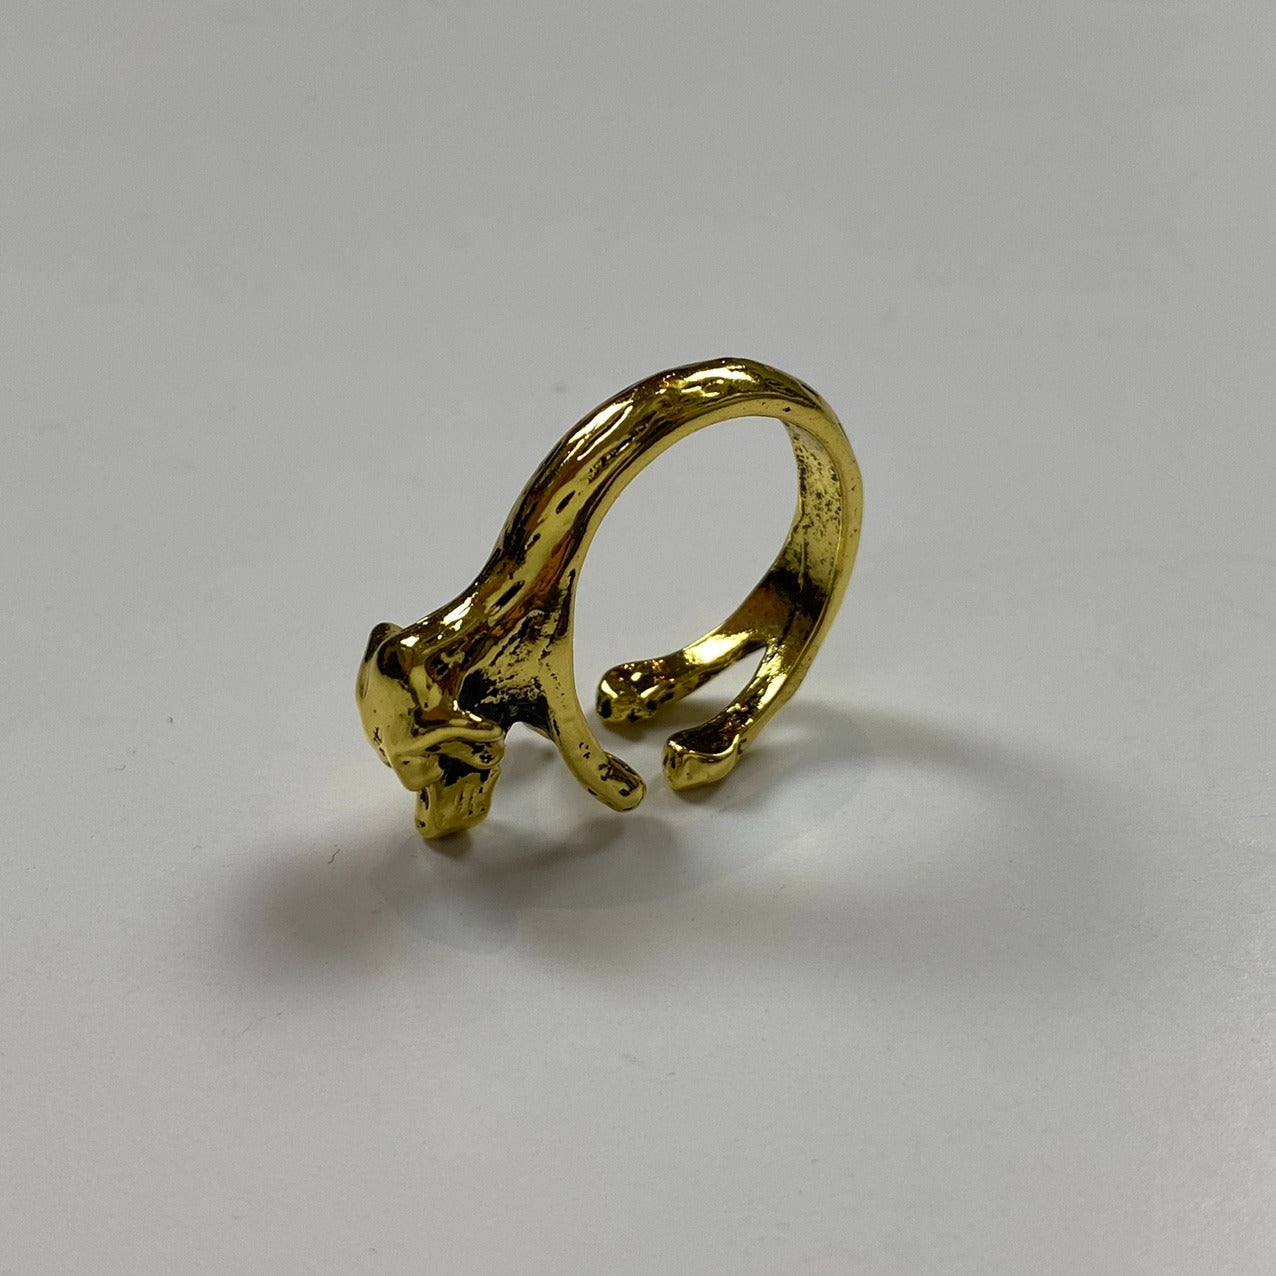 Adjustable Dog Ring Gold